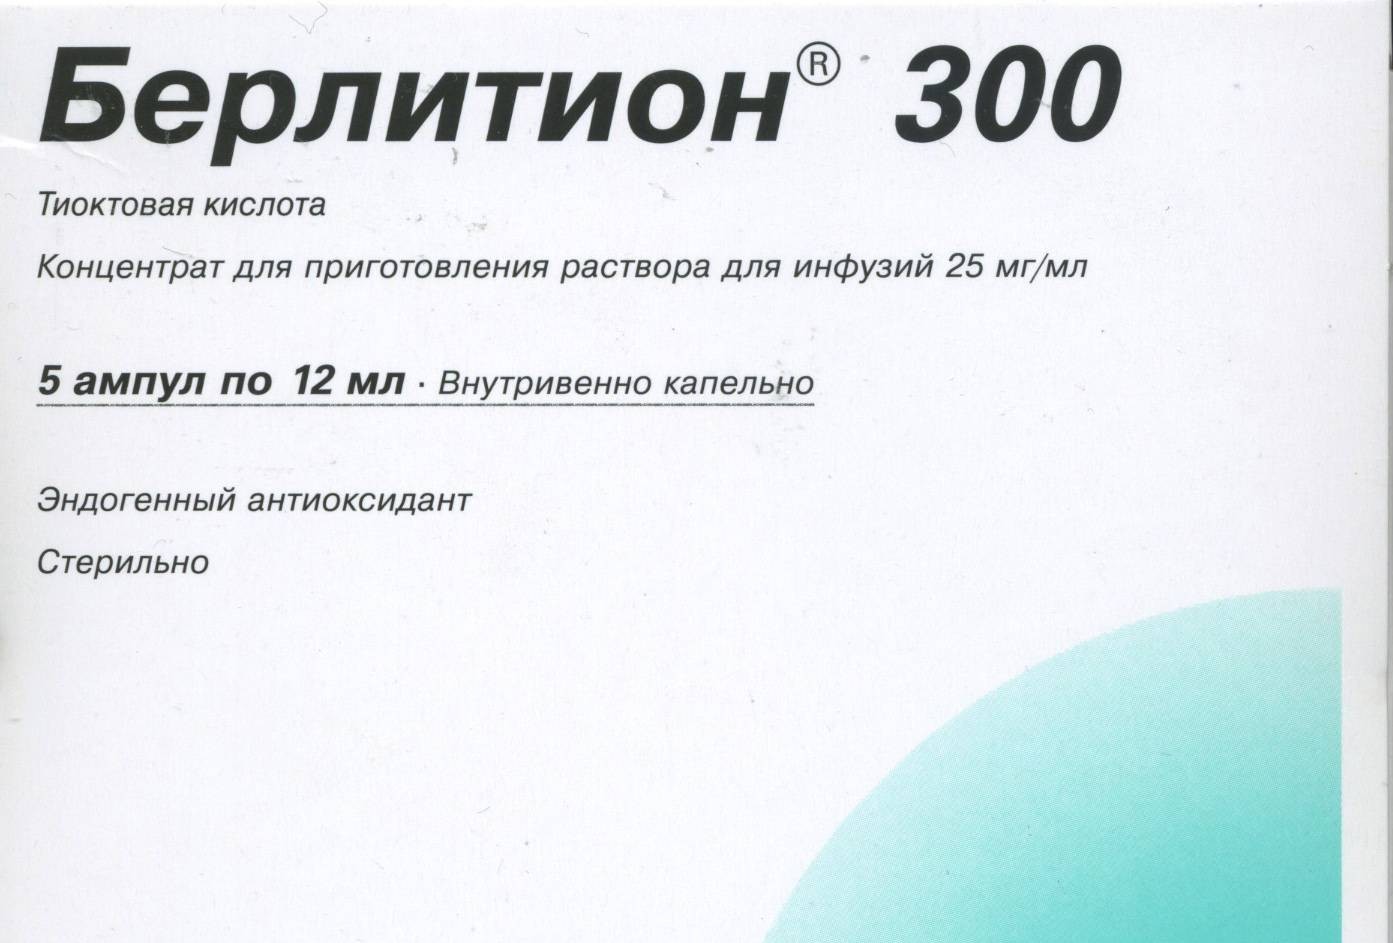 Влагоудерживающий агент е422 medistok.ru - жизнь без болезней и лекарств medistok.ru - жизнь без болезней и лекарств